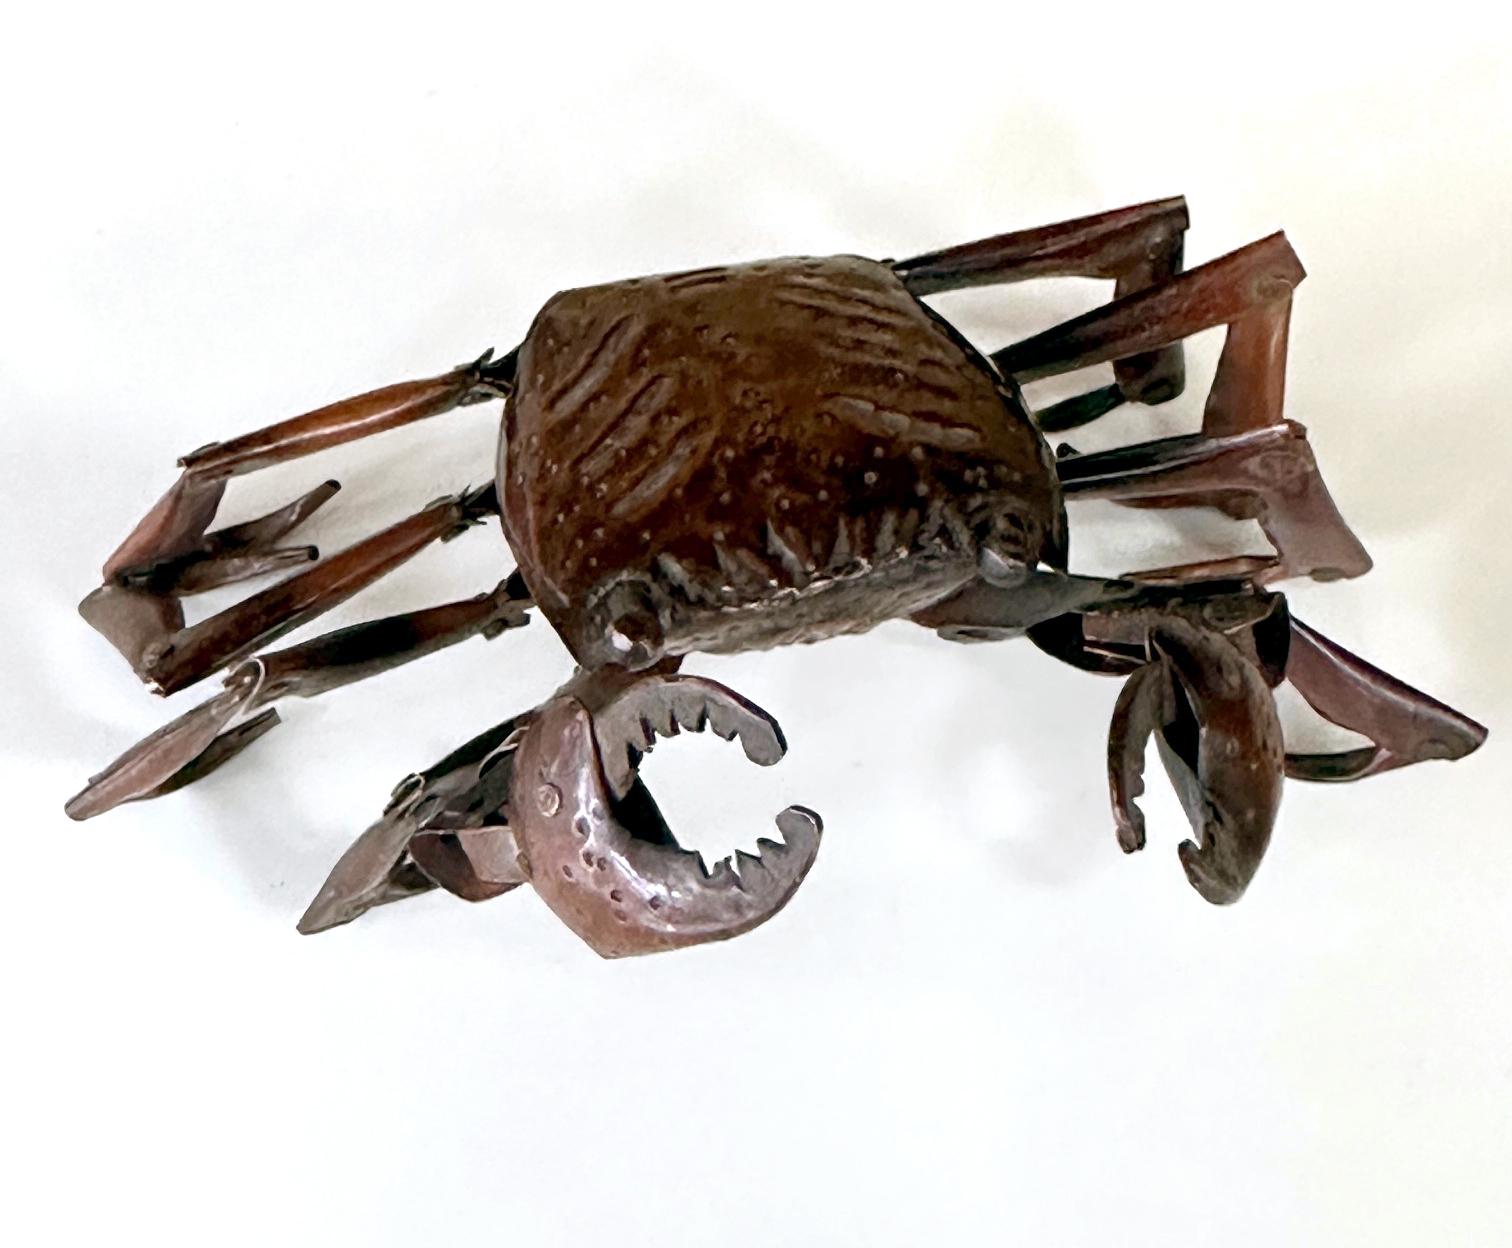 Petit crabe en cuivre aux pattes articulées réalisé par Myochin Hiroyoshi à la fin de la période Meiji, vers les années 1890-1900. En tant qu'objet d'exposition ornemental, ce type de petite sculpture avec des pièces mobiles est connu en japonais